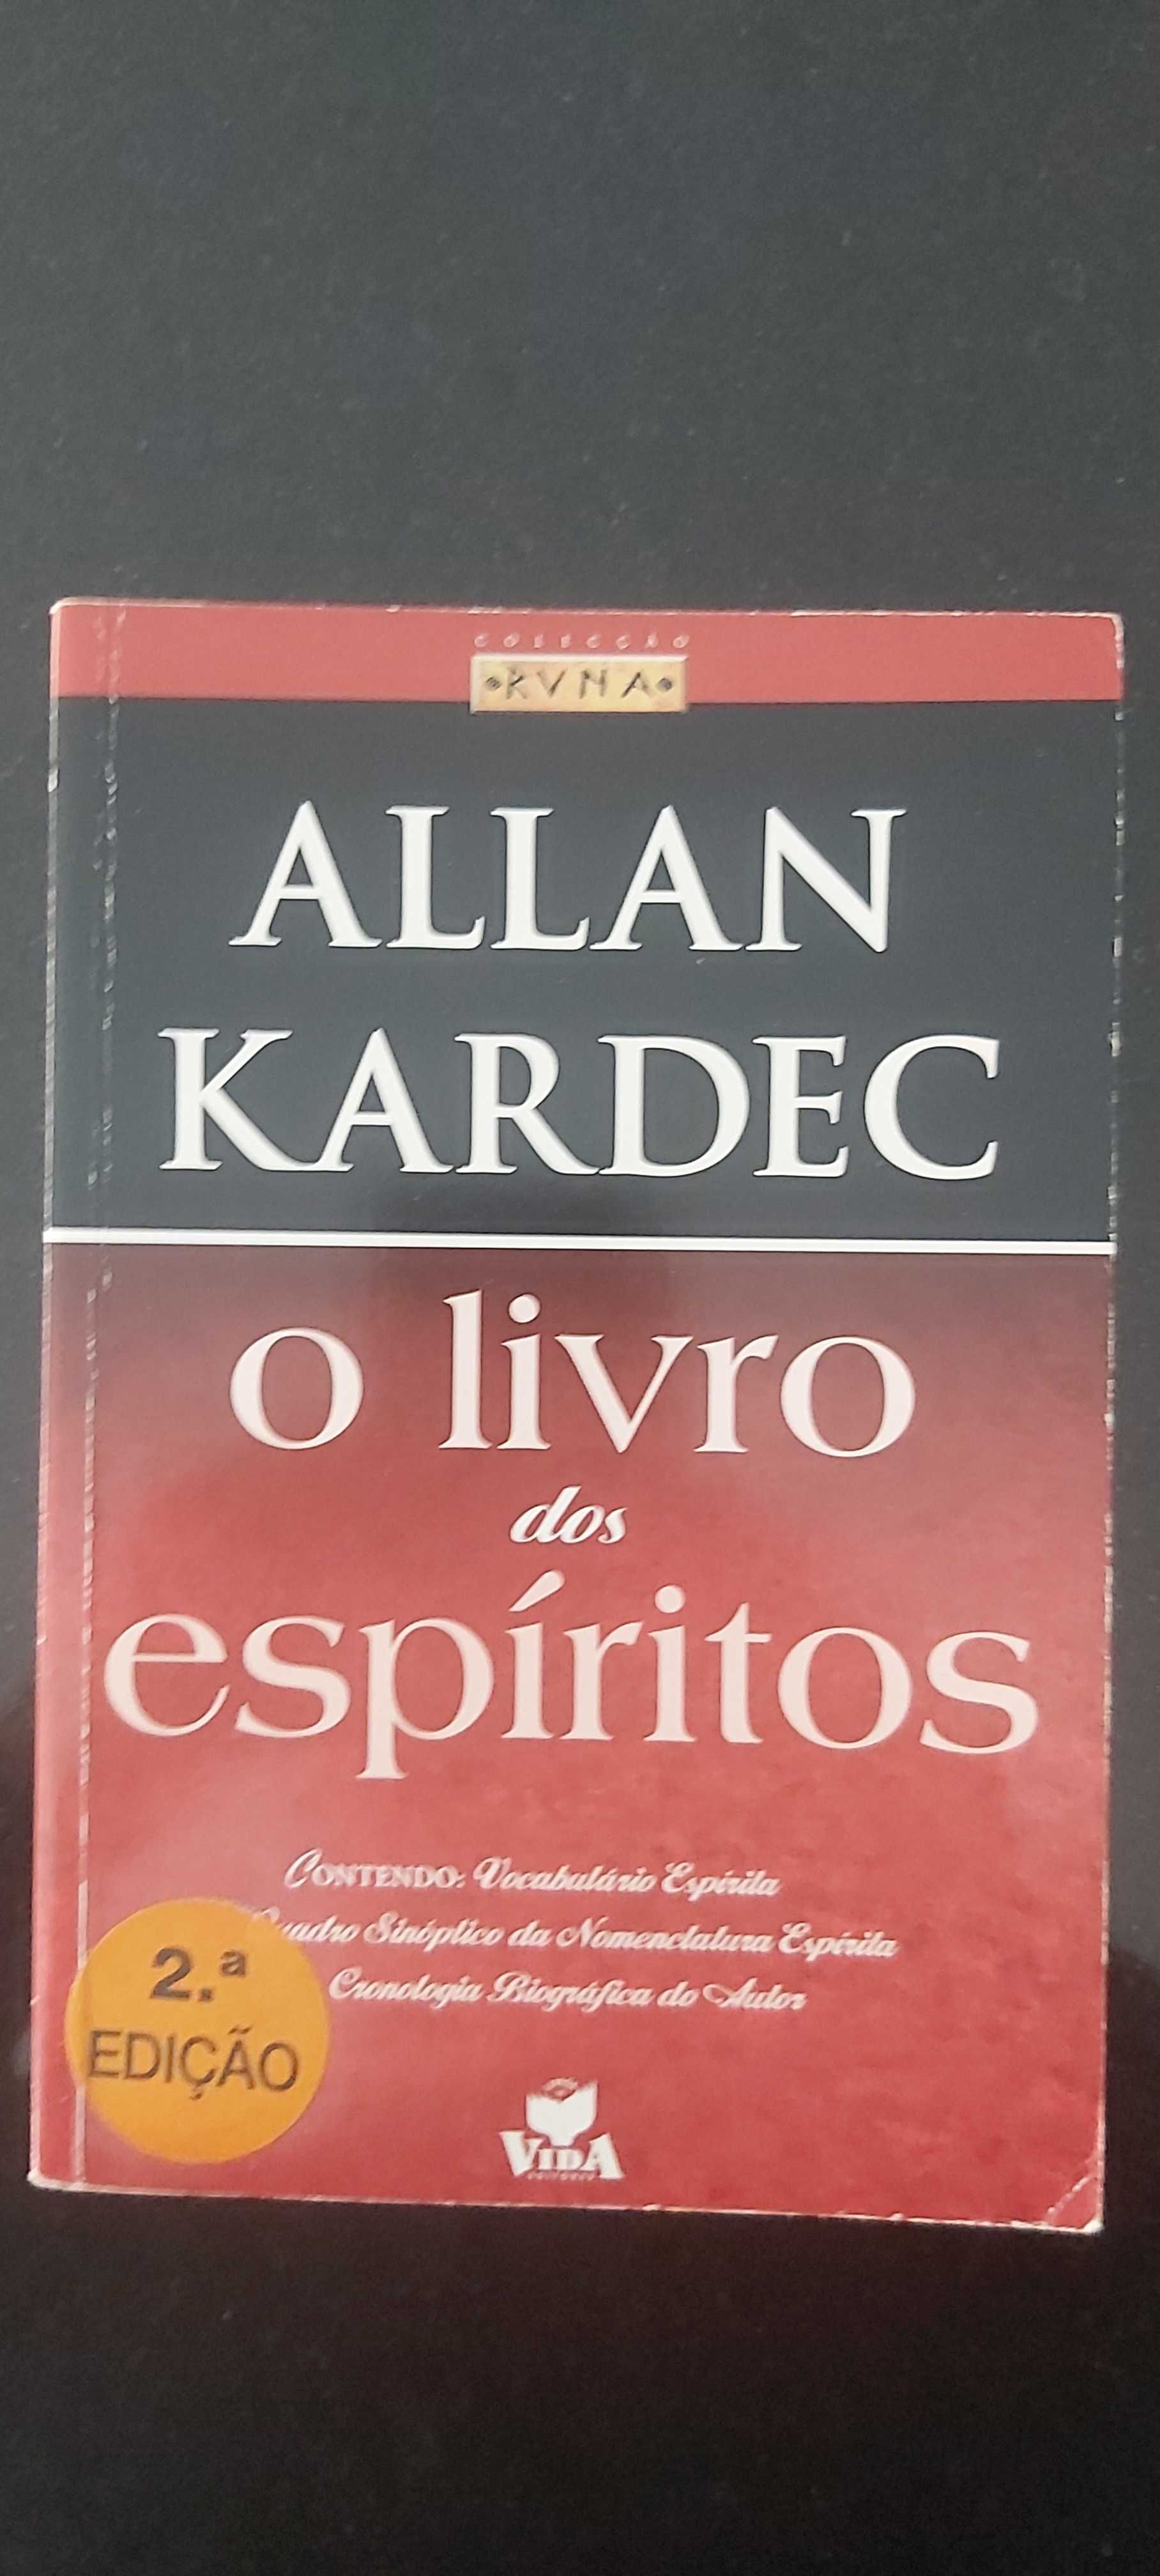 Allan Kardec o livro dos espíritos